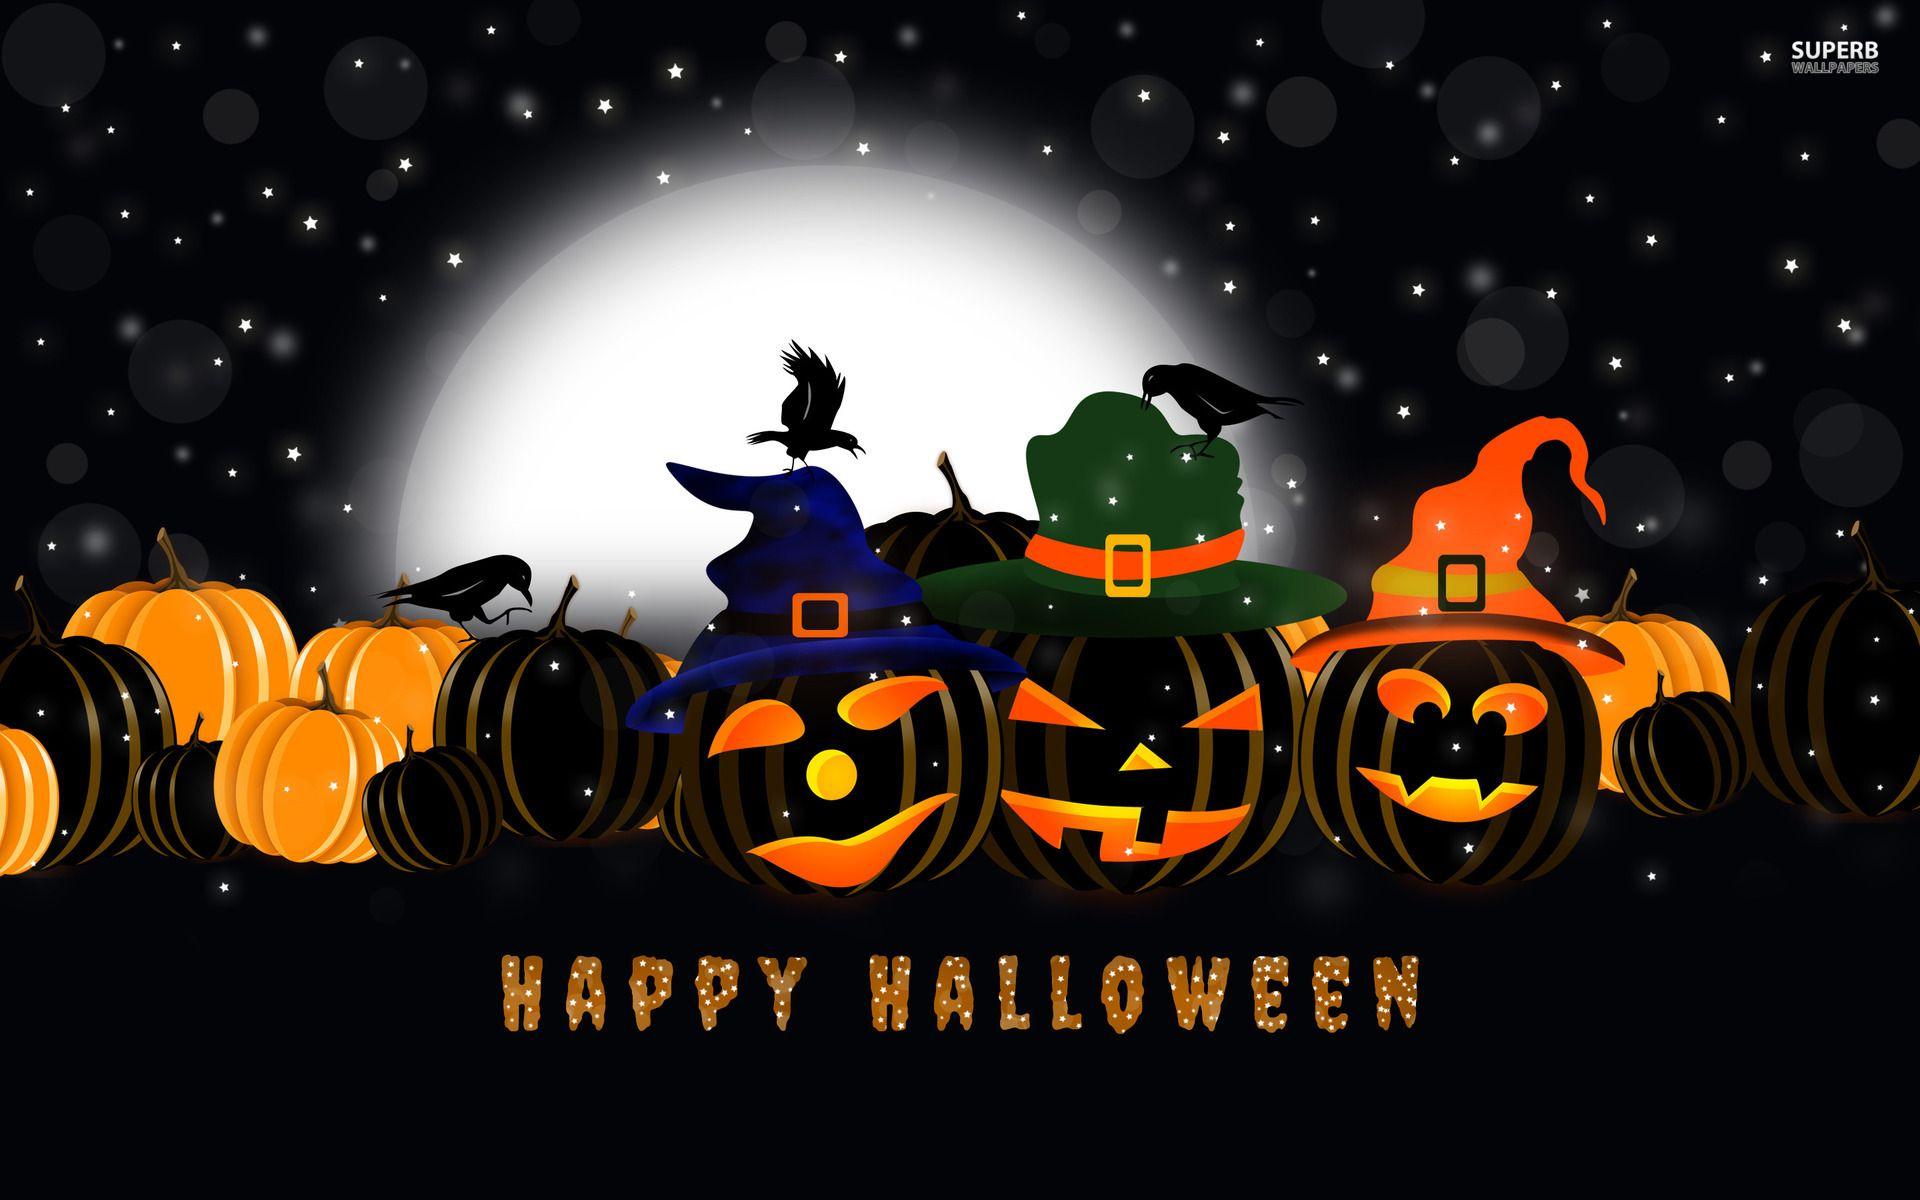 Happy Halloween Desktop Wallpapers - Top Free Happy Halloween Desktop Backgrounds - WallpaperAccess